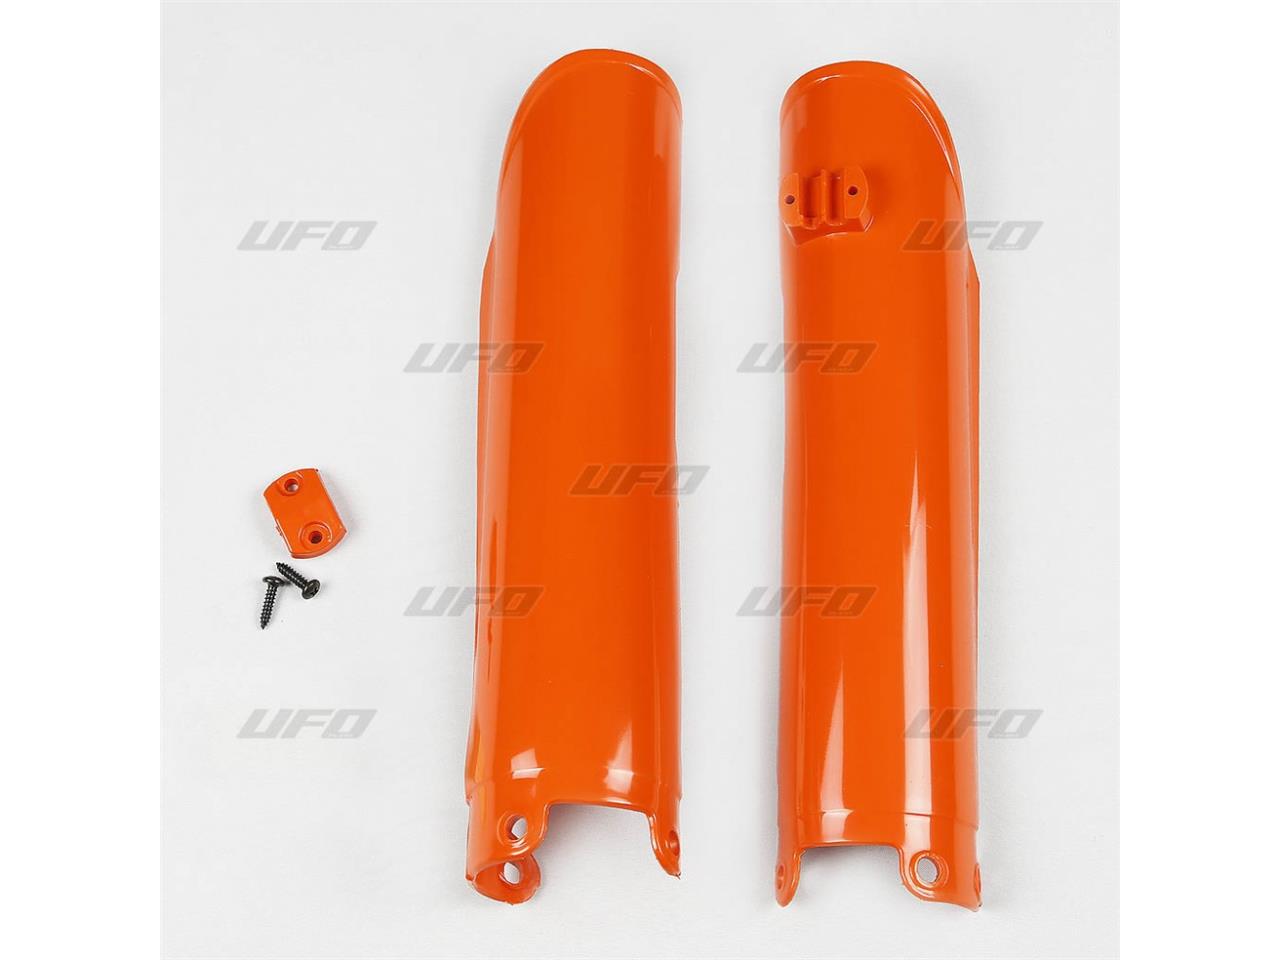 Protection de Fourche Orange UFO pour KTM SX380 (01-02)